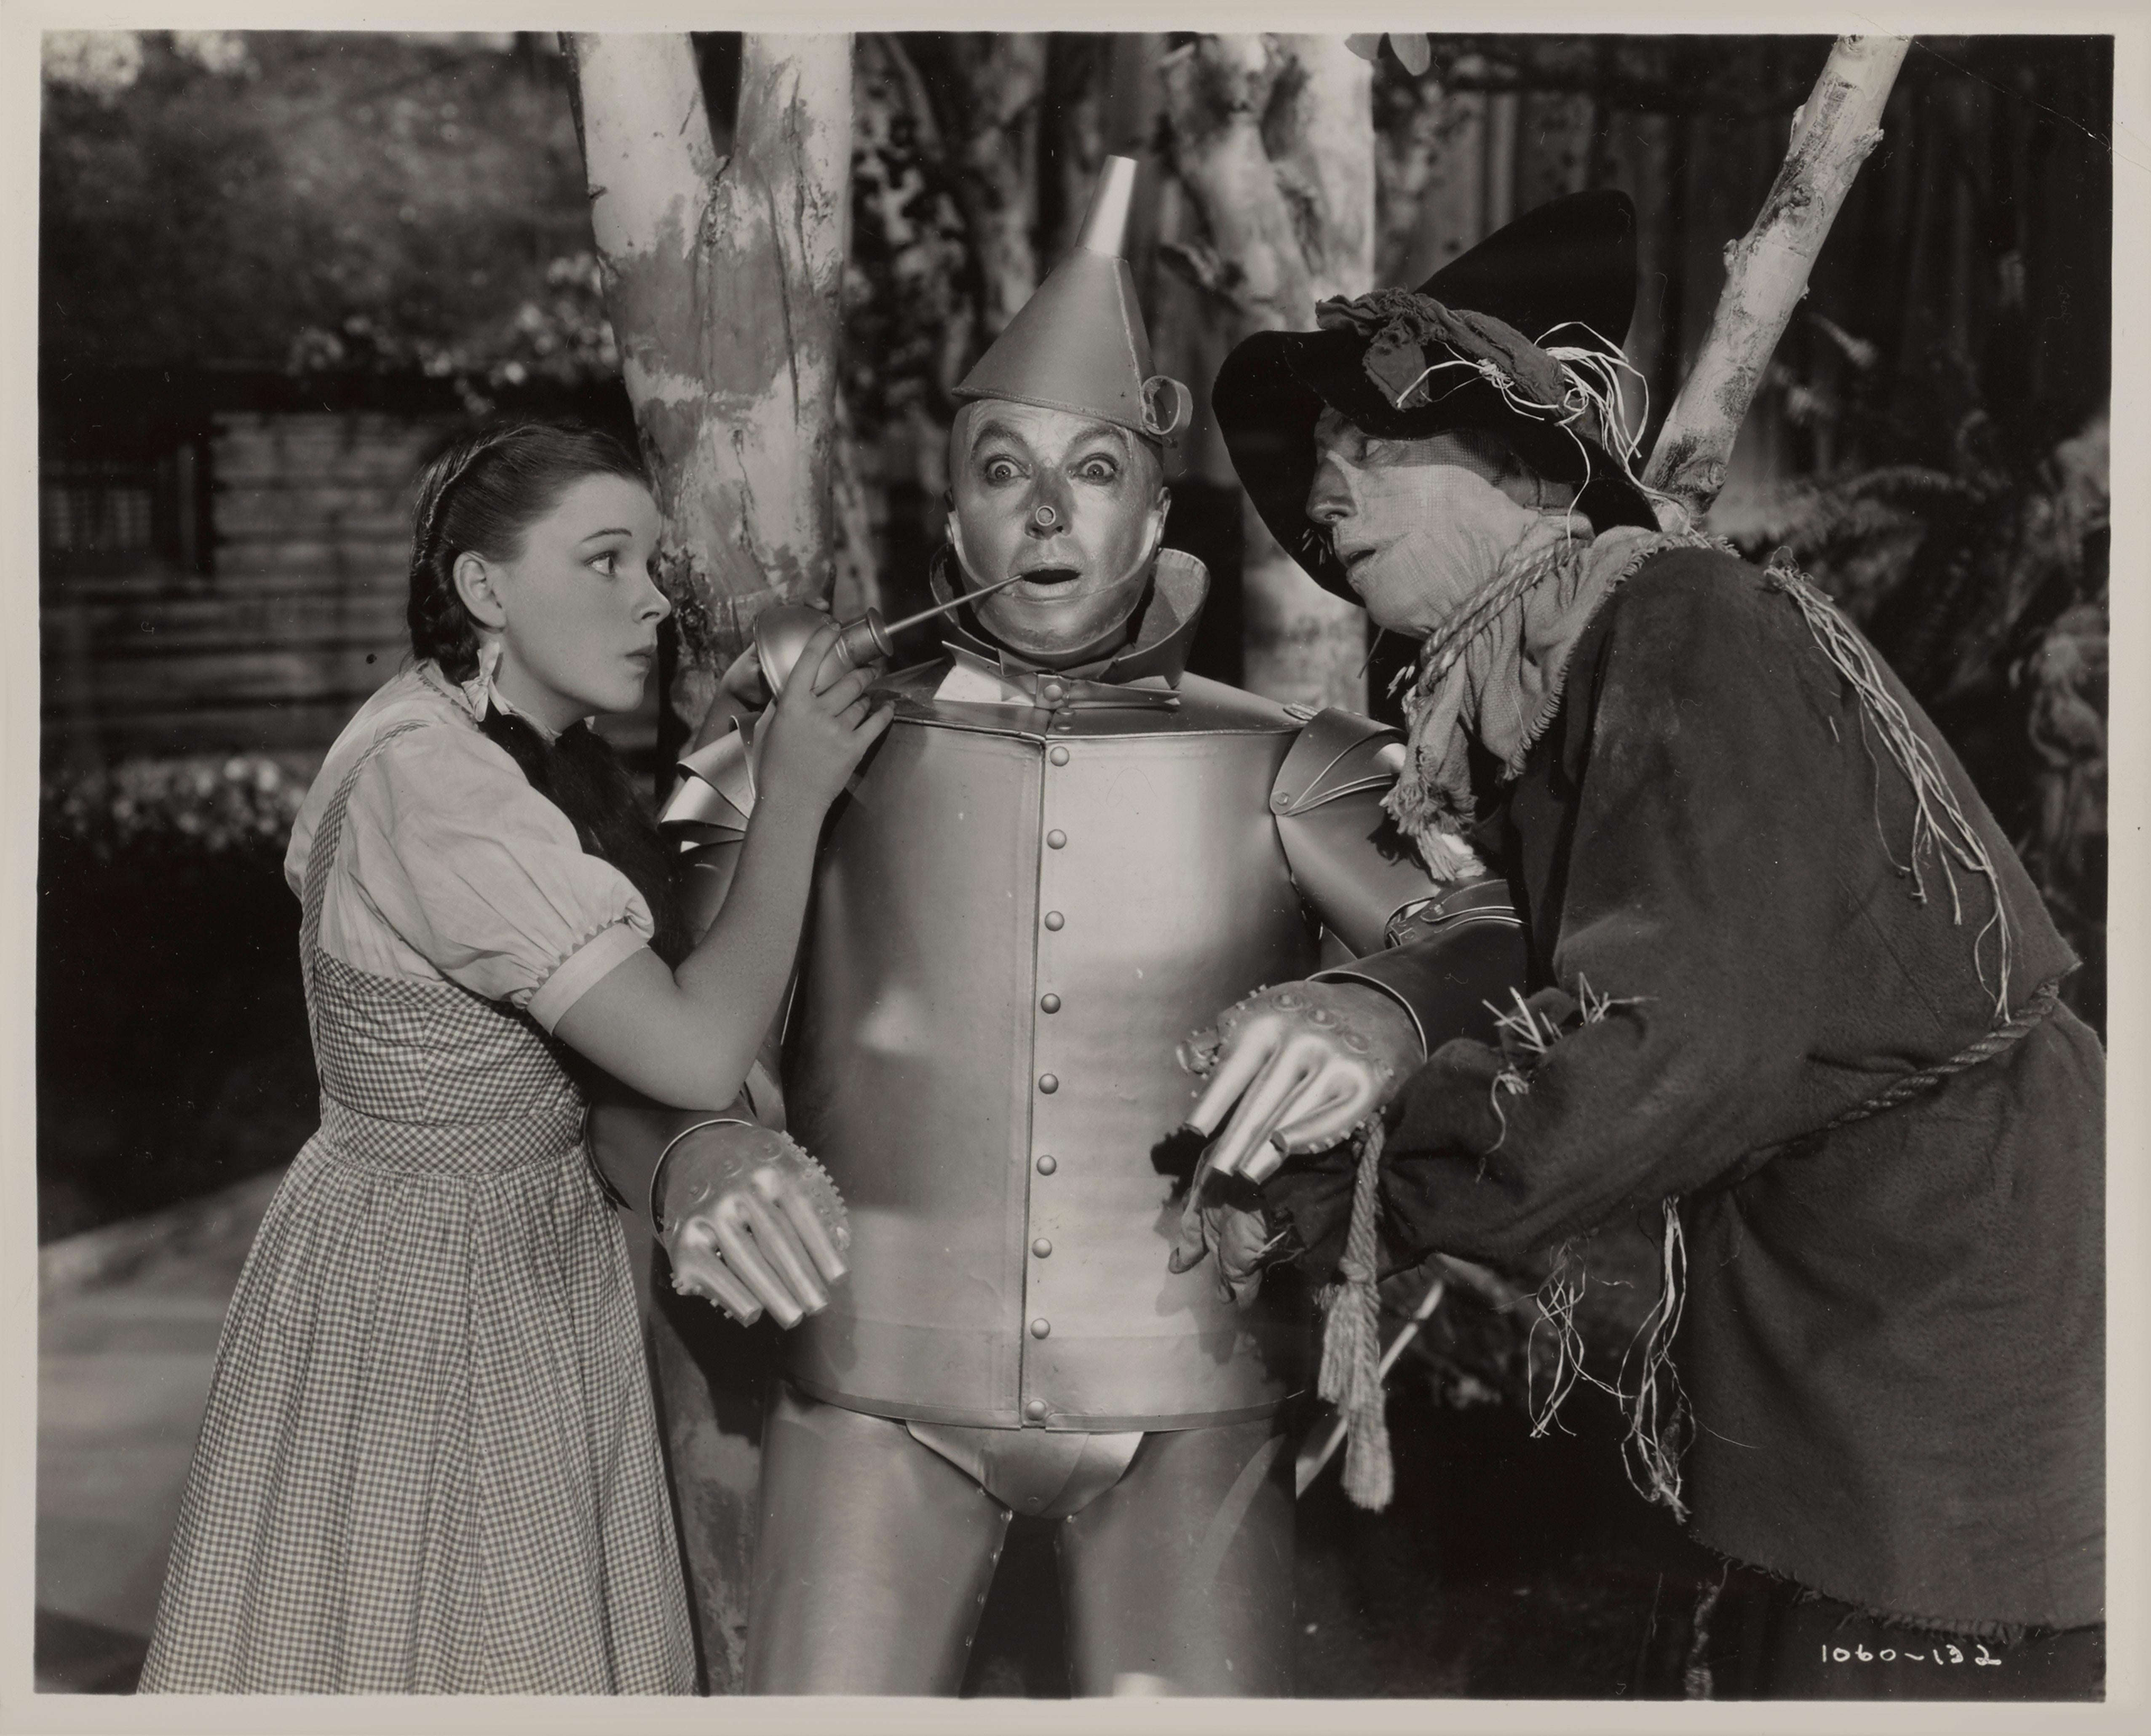 Originales schwarz-weißes Hochglanz-Fotostandbild aus dem Jahr 1939.
Nur wenige Filme erfreuen sich so anhaltender Beliebtheit wie die Verfilmung von L. Frank Baums Kinderroman Der Zauberer von Oz aus dem Jahr 1939. Judy Garland führt eine herrlich